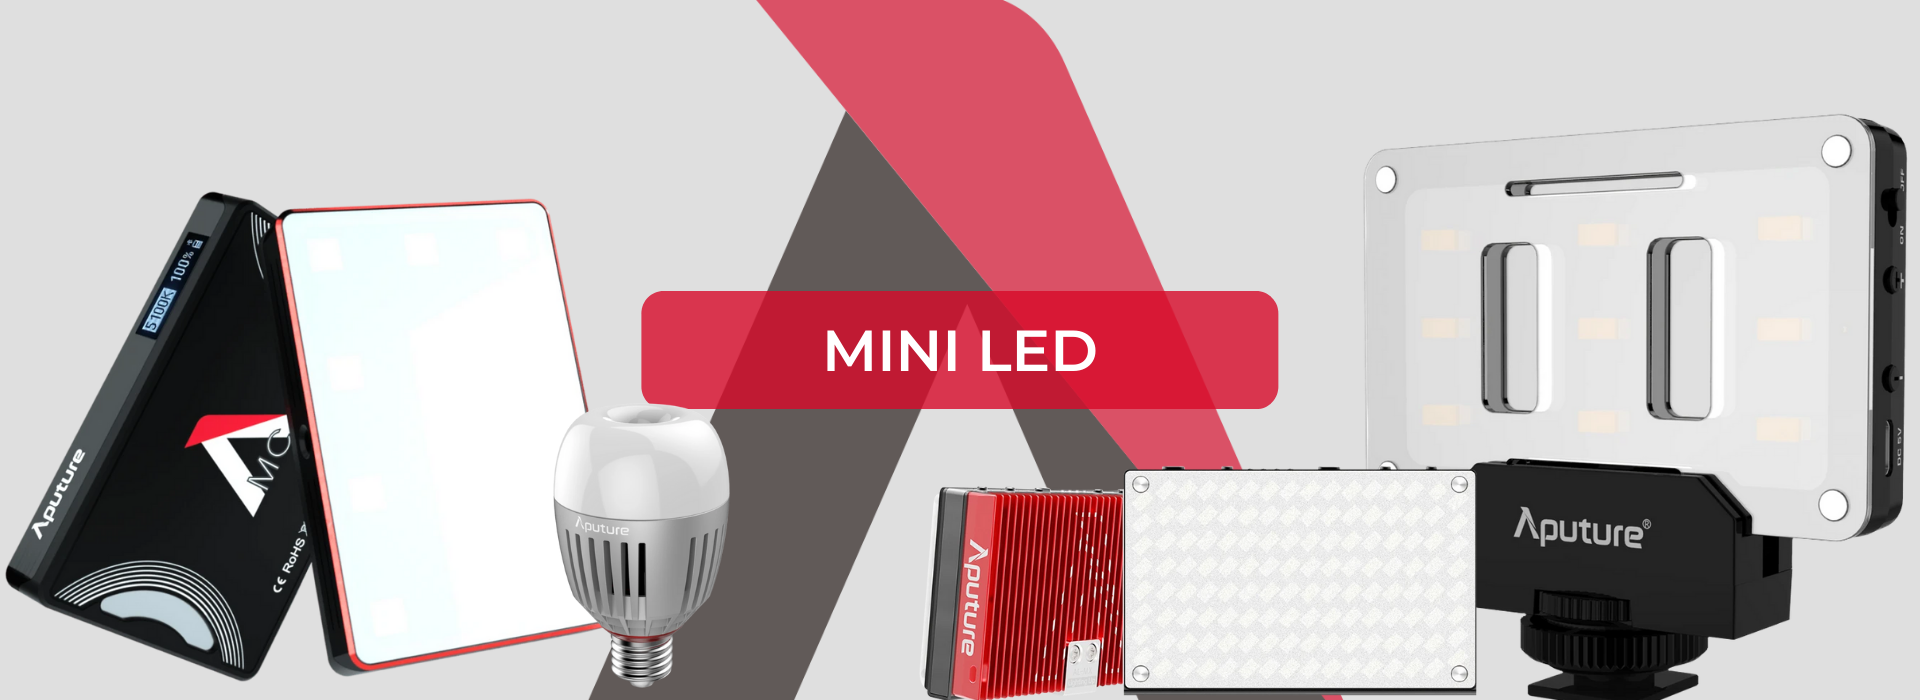 Aputure - Mini LED